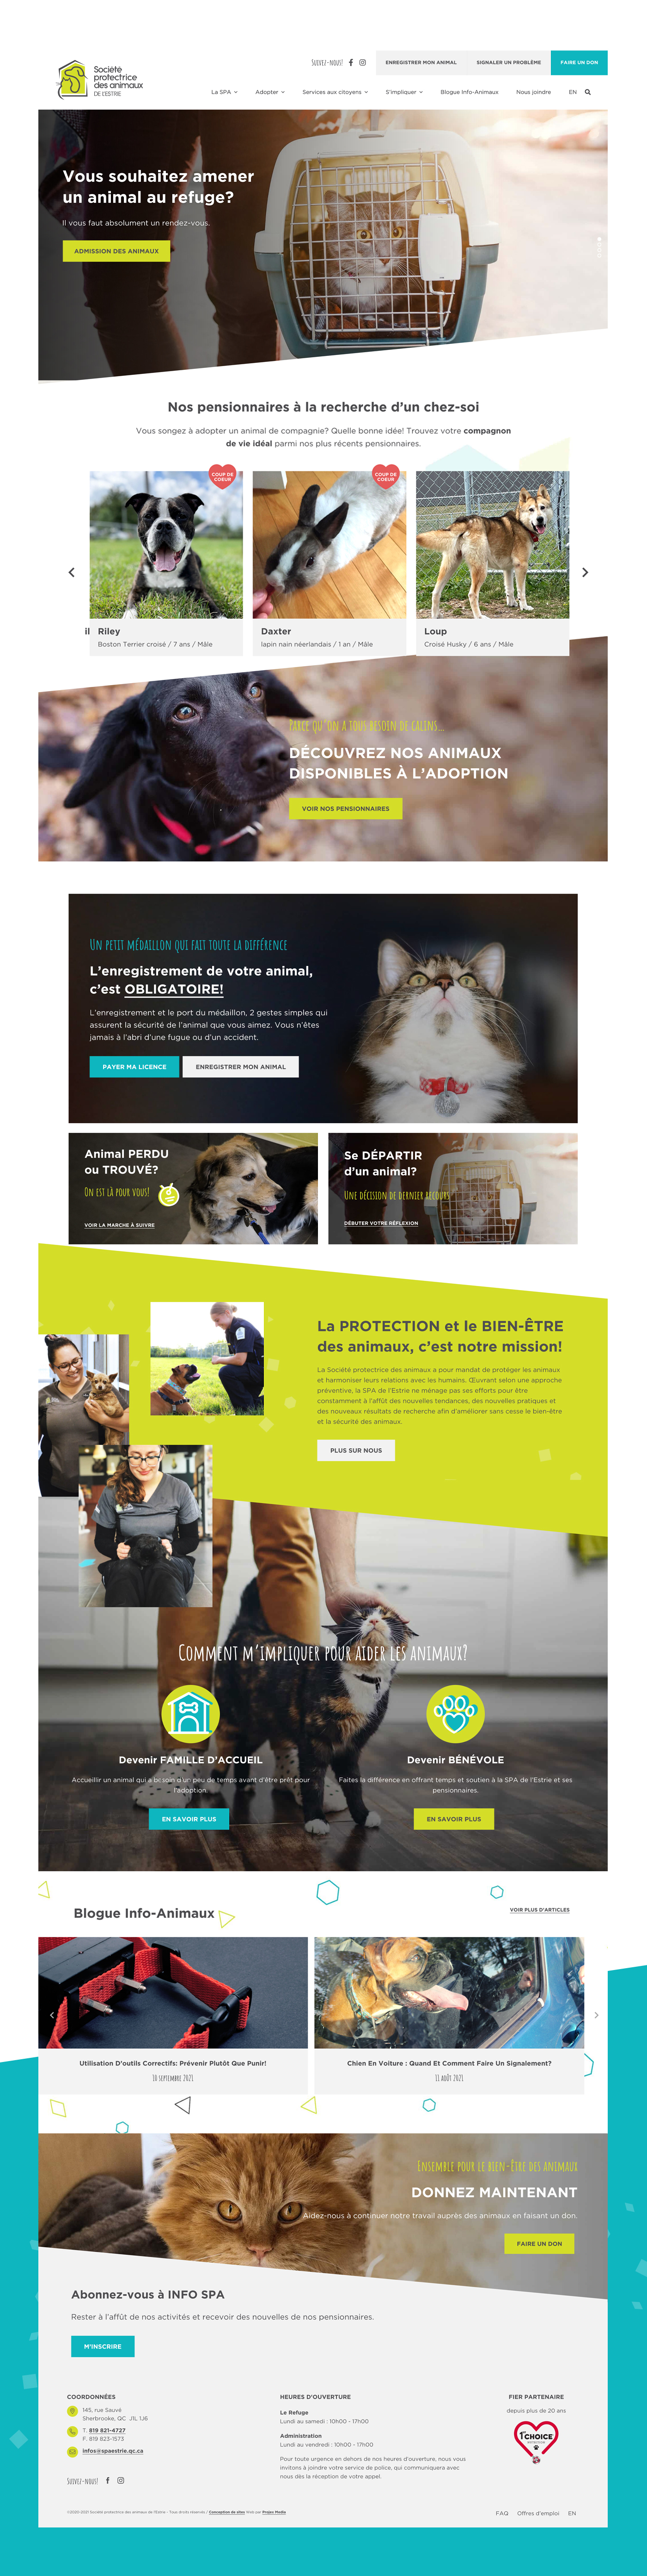 Site Web de la Société protectrice des animaux de l'Estrie / 2020 - Réalisation signée Projex Media